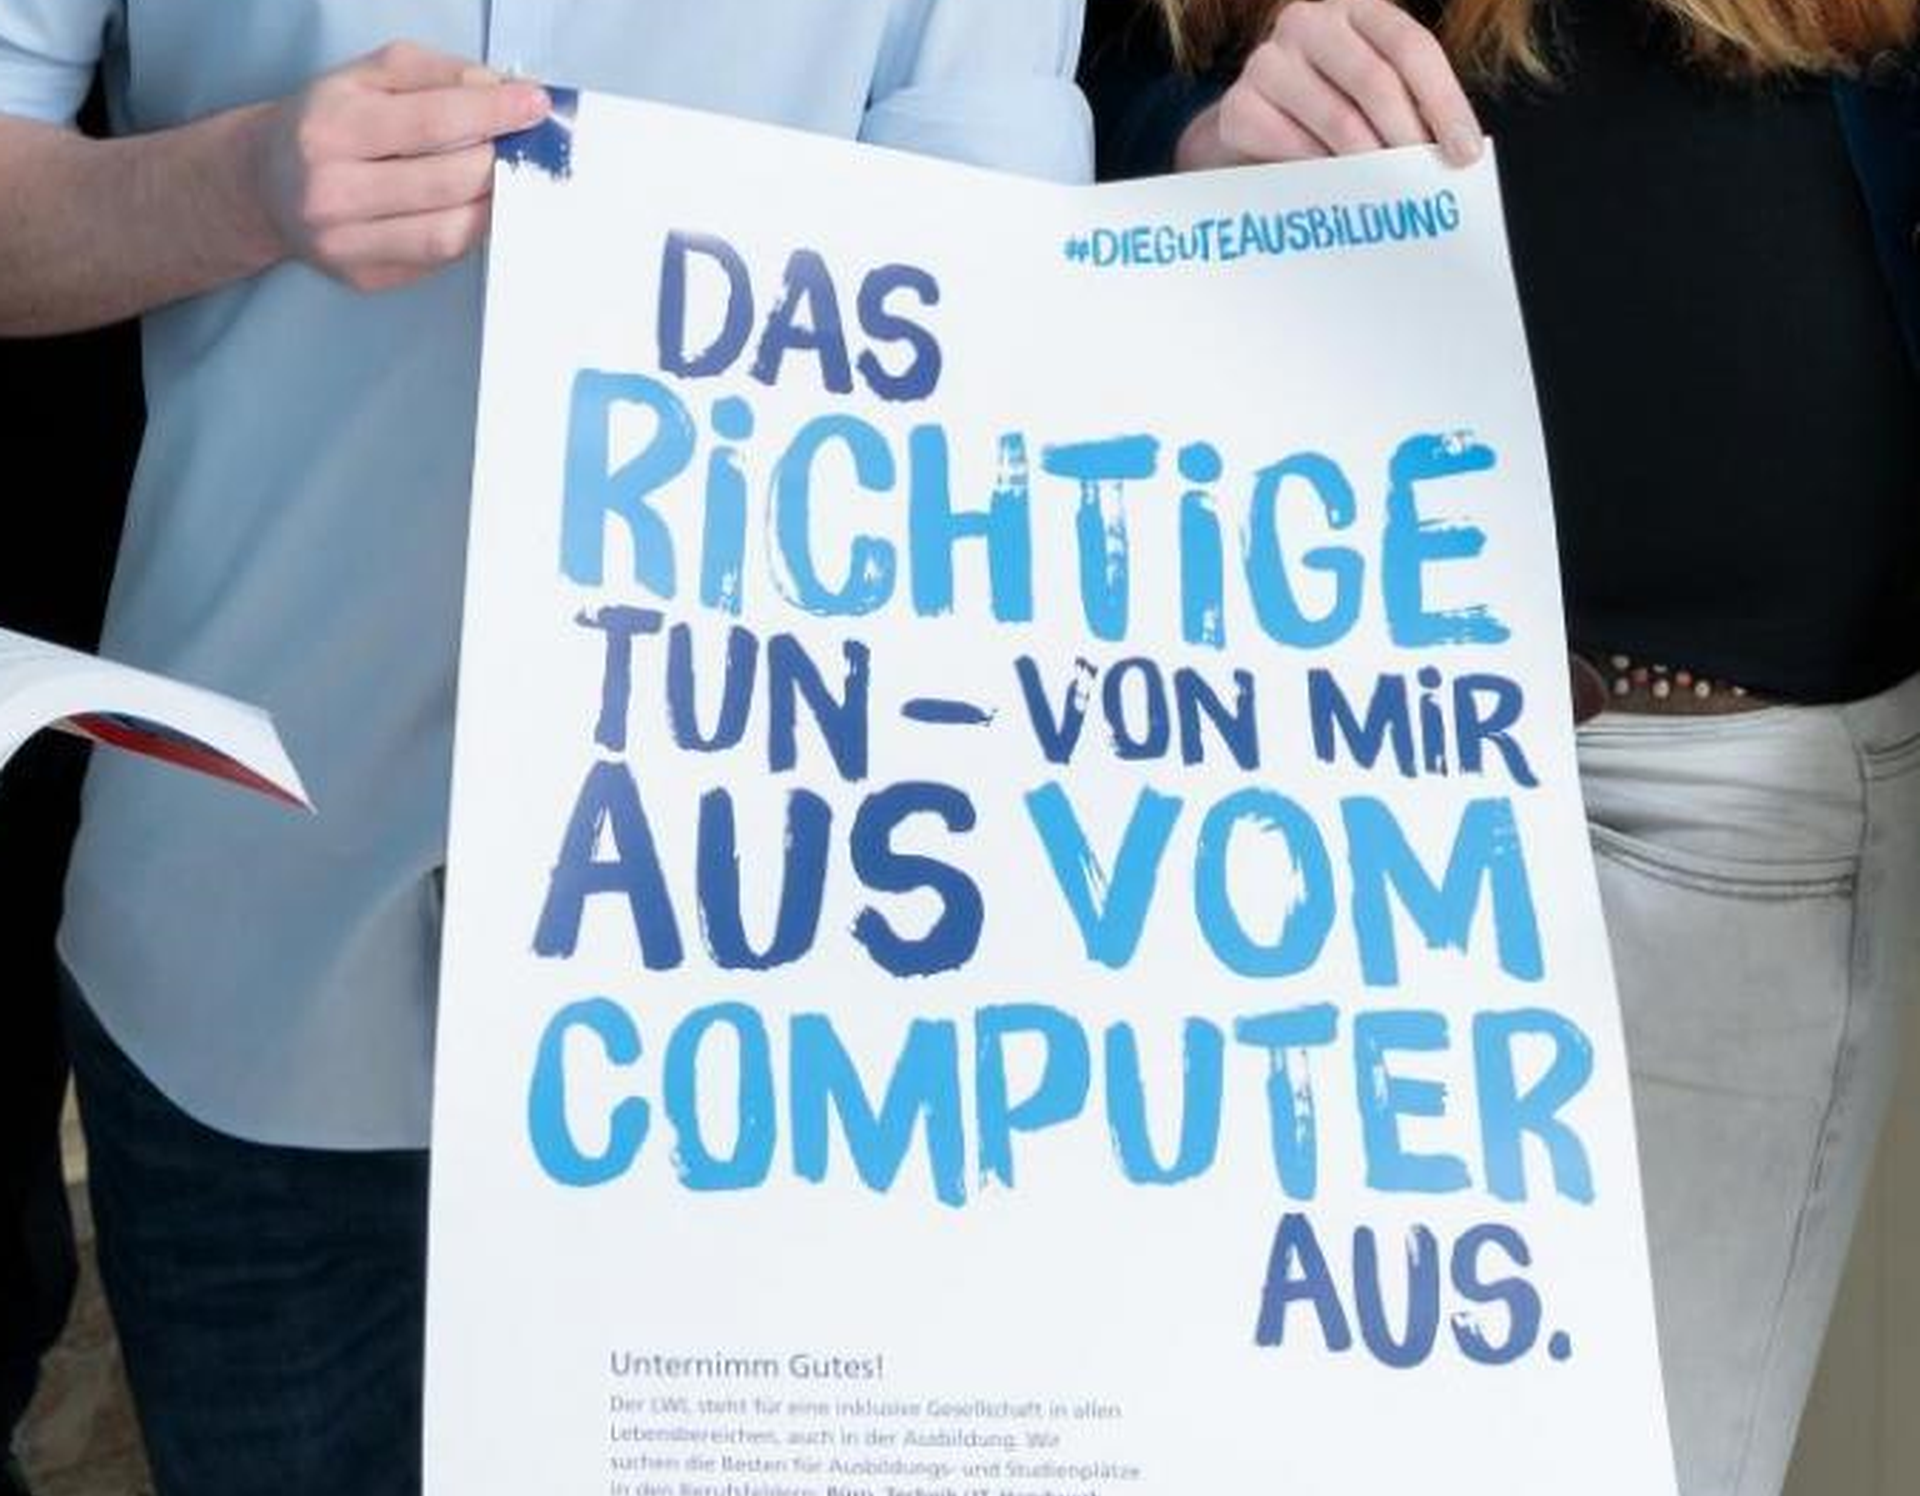 gezeigt wird 1 Plakat aus der Ausbildungskampagne des LWL mit der Aufschrift "Das Richtige machen - vom mir aus vom Computer aus"